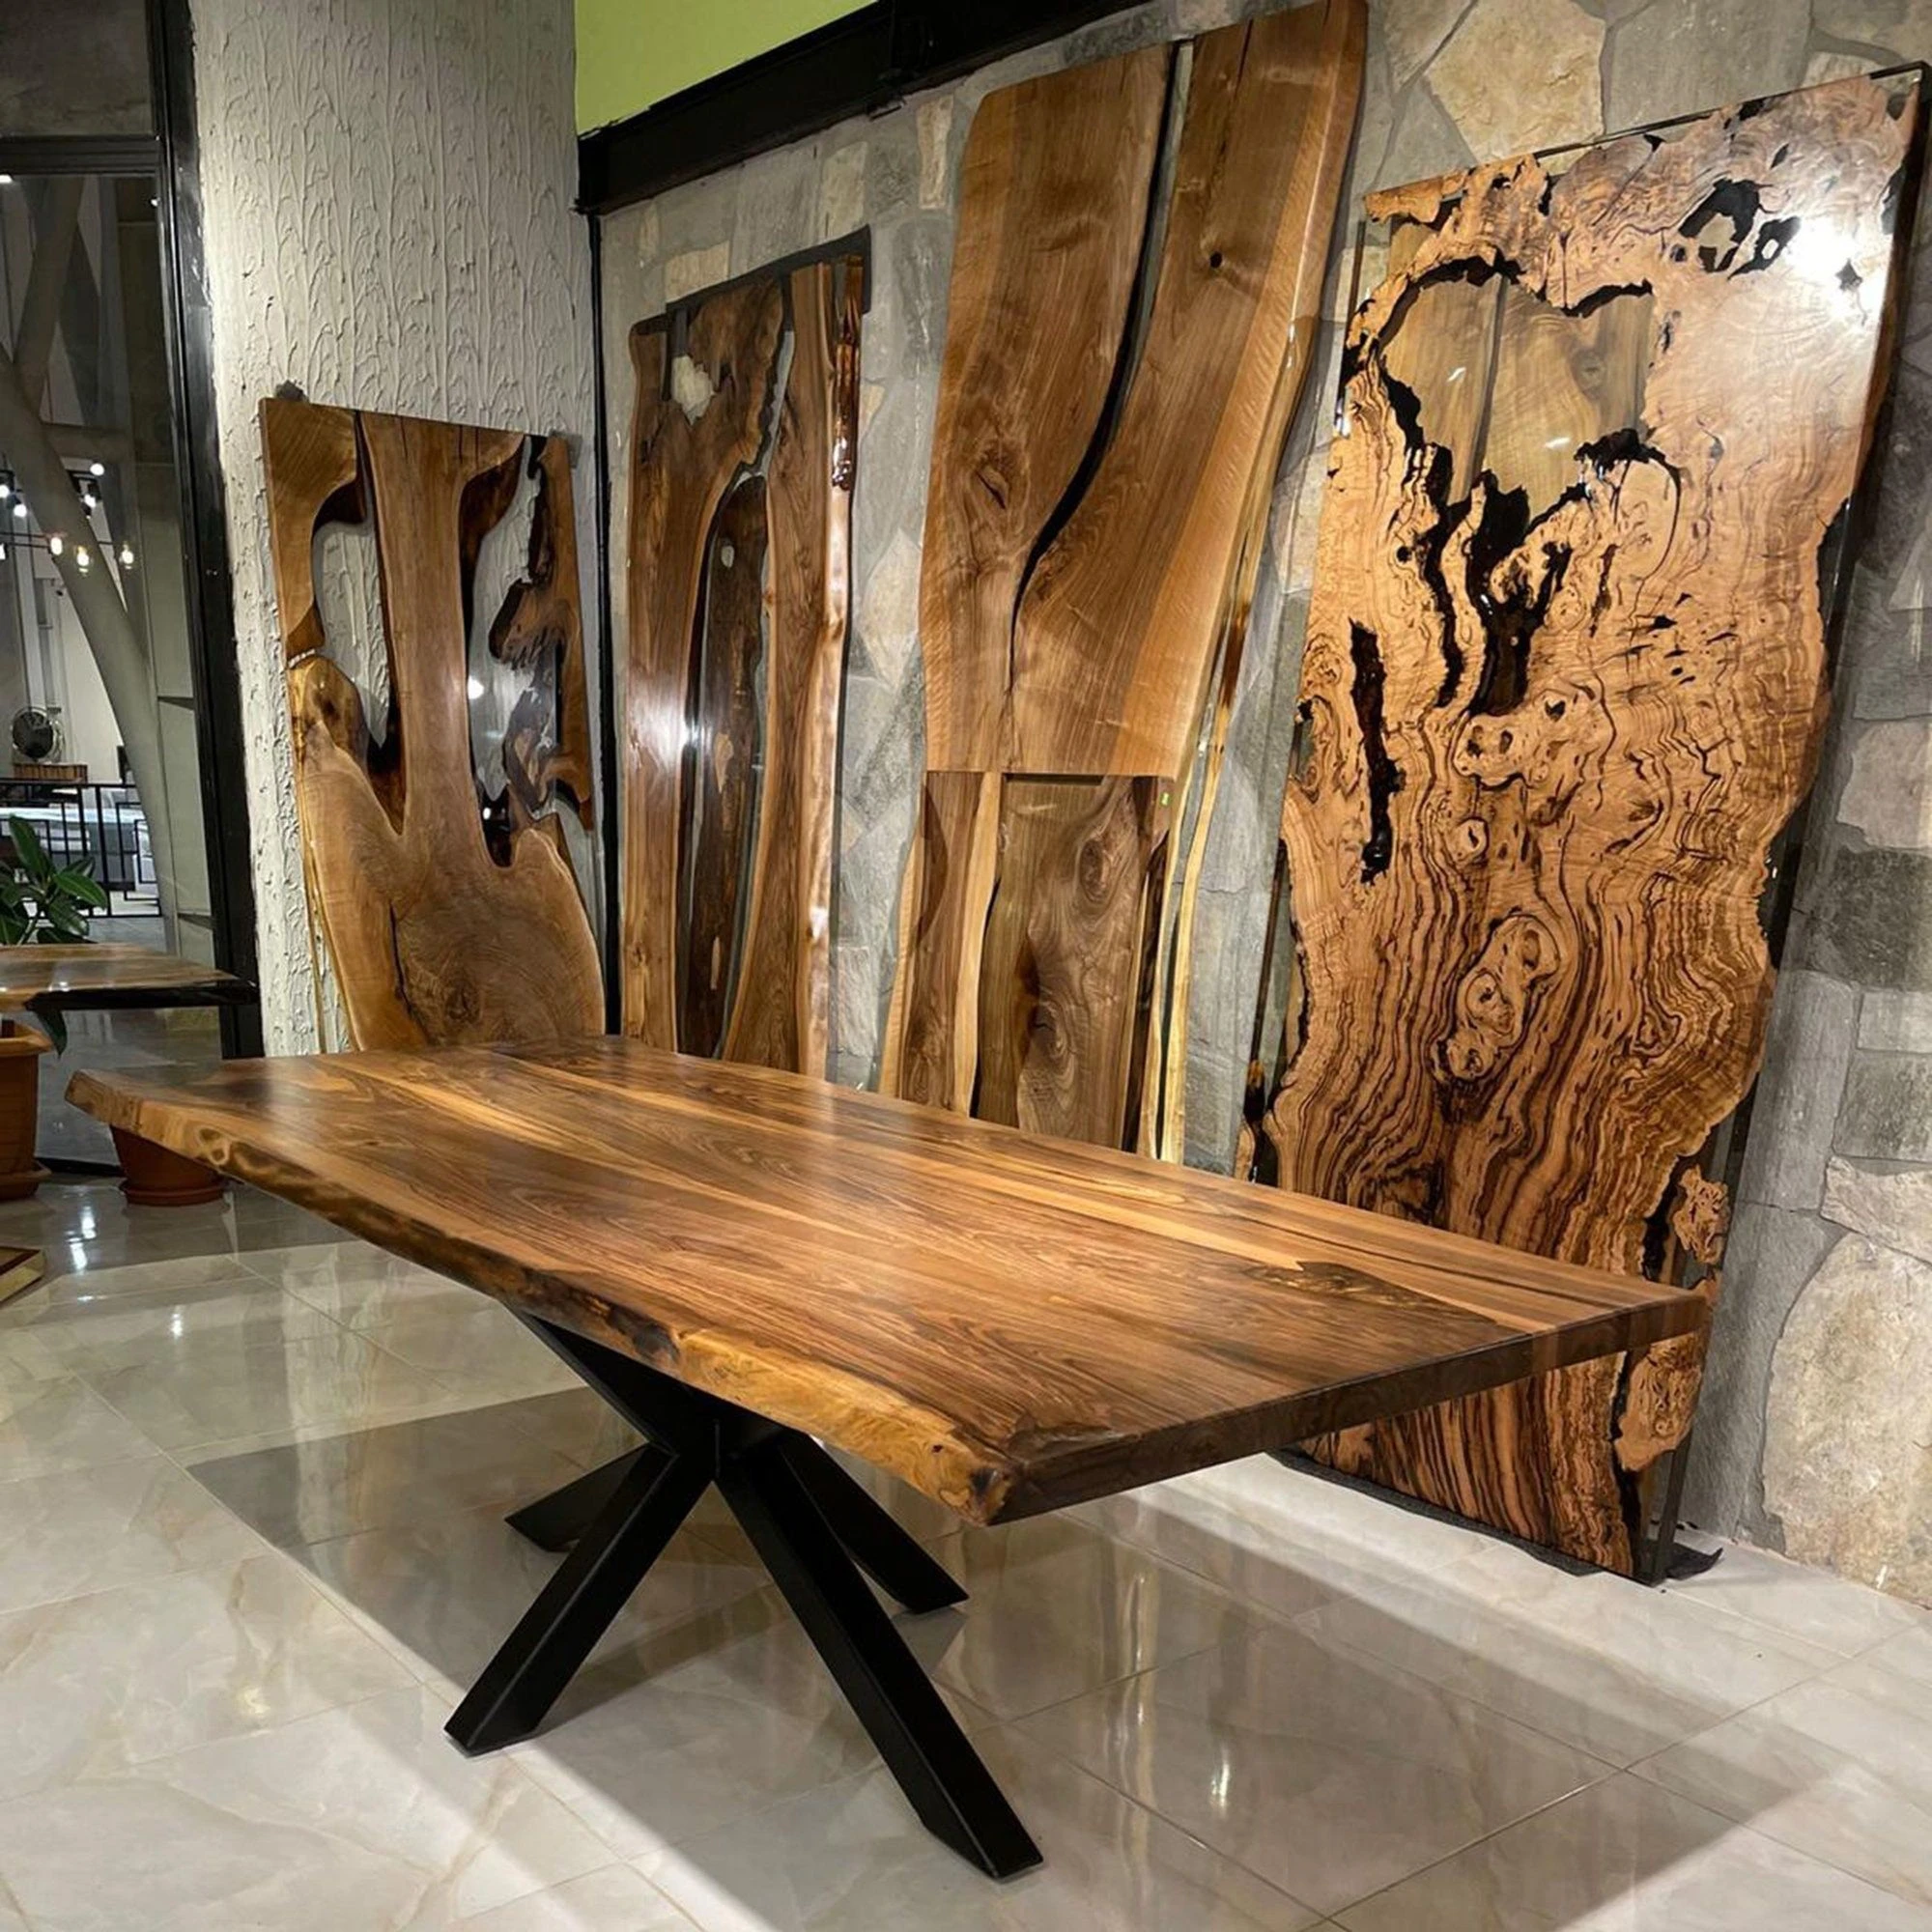 

Современный деревянный обеденный стол неправильной формы с прямой поставкой от производителя, облицовочная деревянная плита из массива ореха